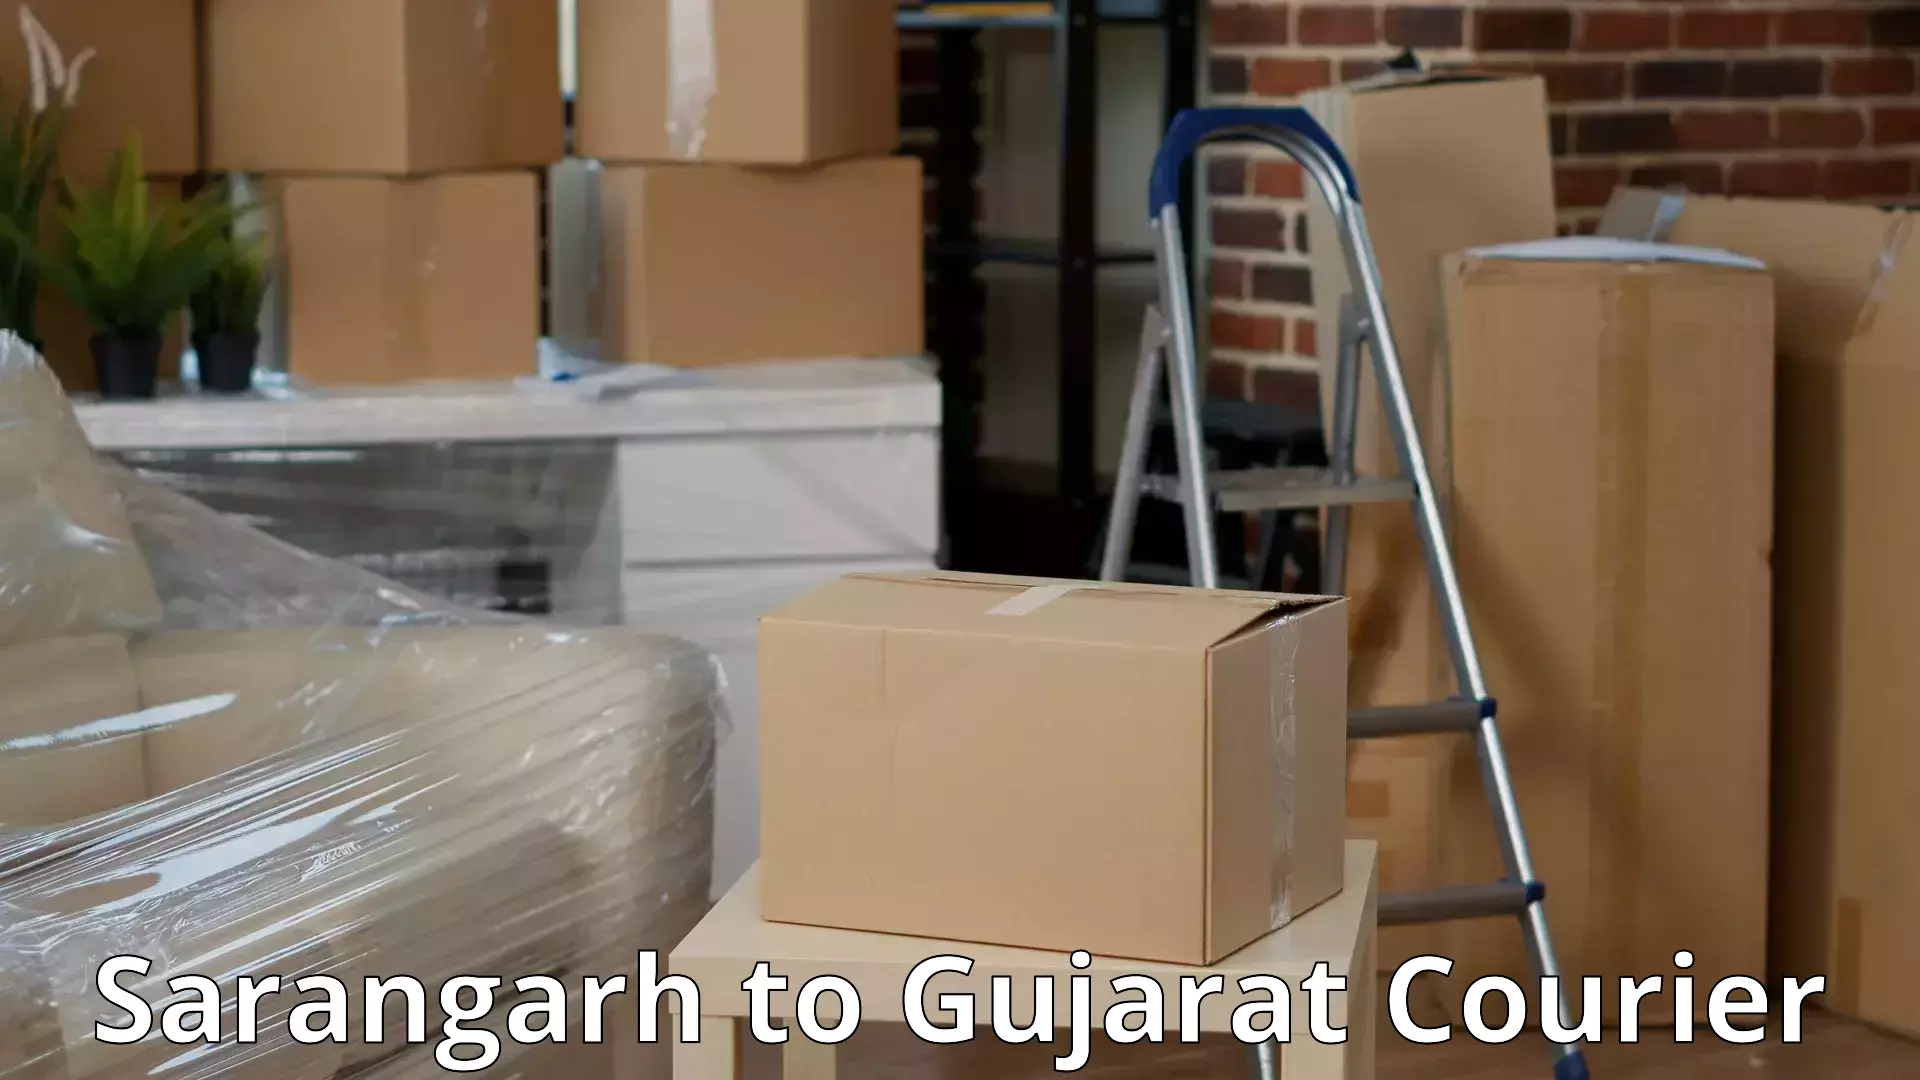 Furniture relocation services Sarangarh to Gandhidham